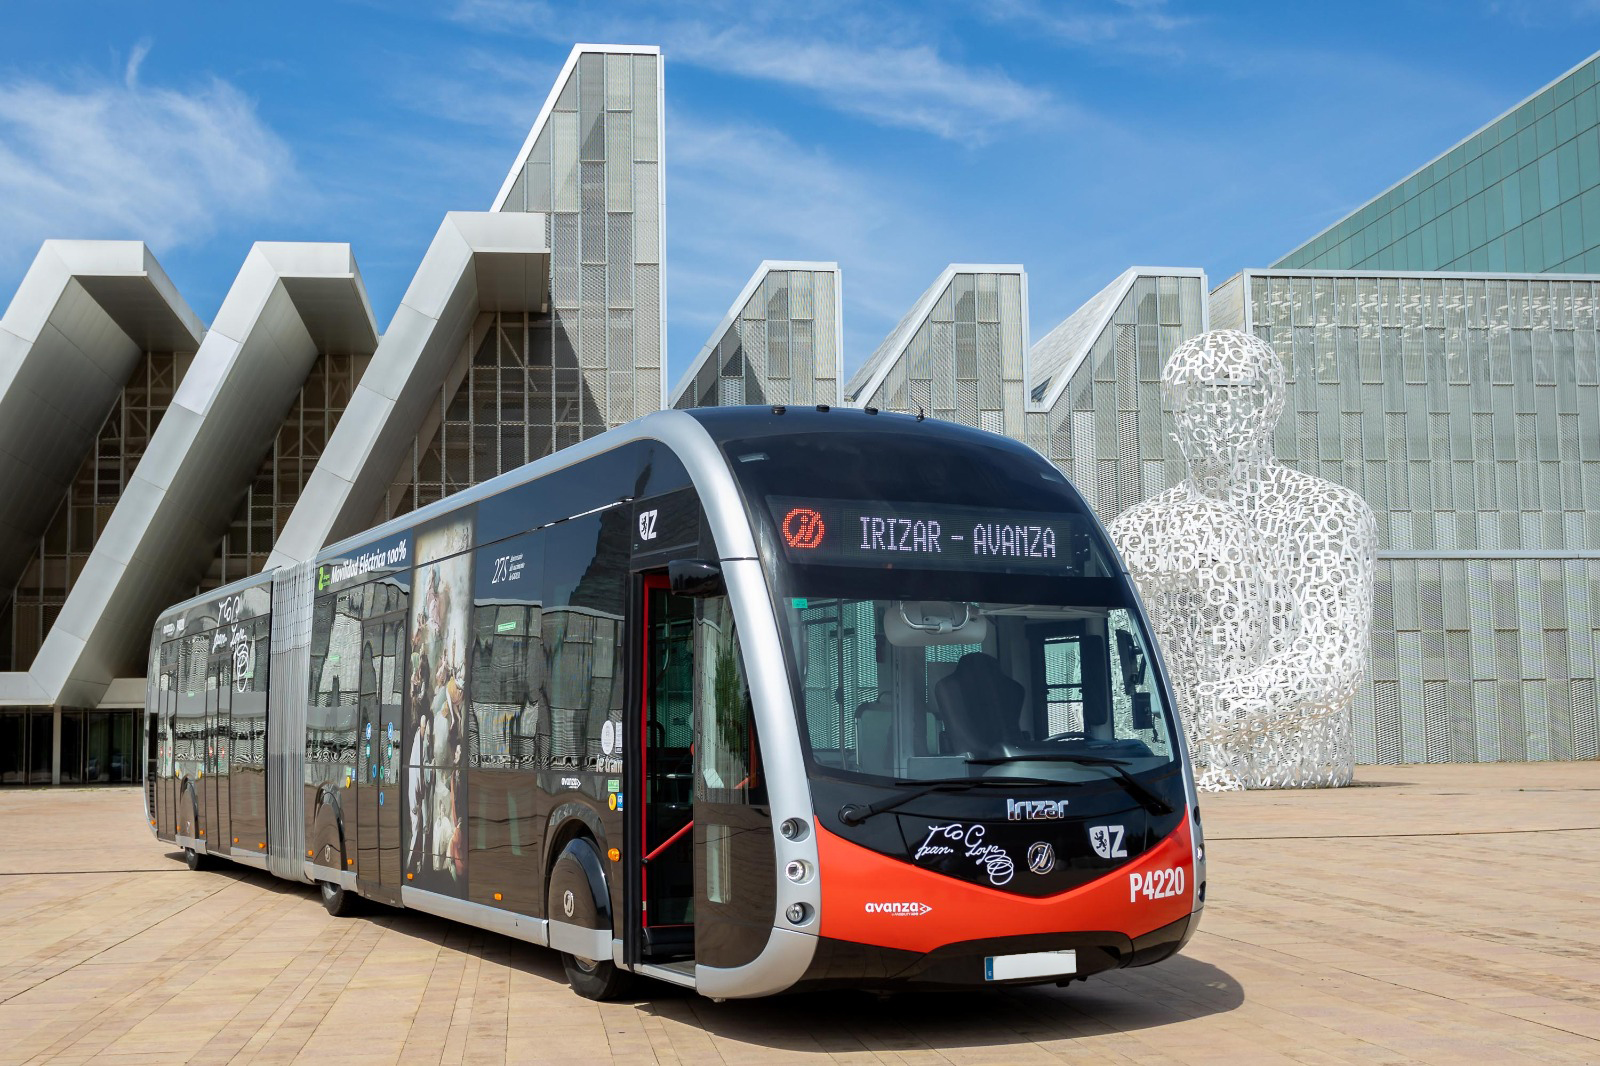 La mairie de Saragosse et Avanza misent sur les autobus électriques d'Irizar e-mobility pour renouveler leur flotte 